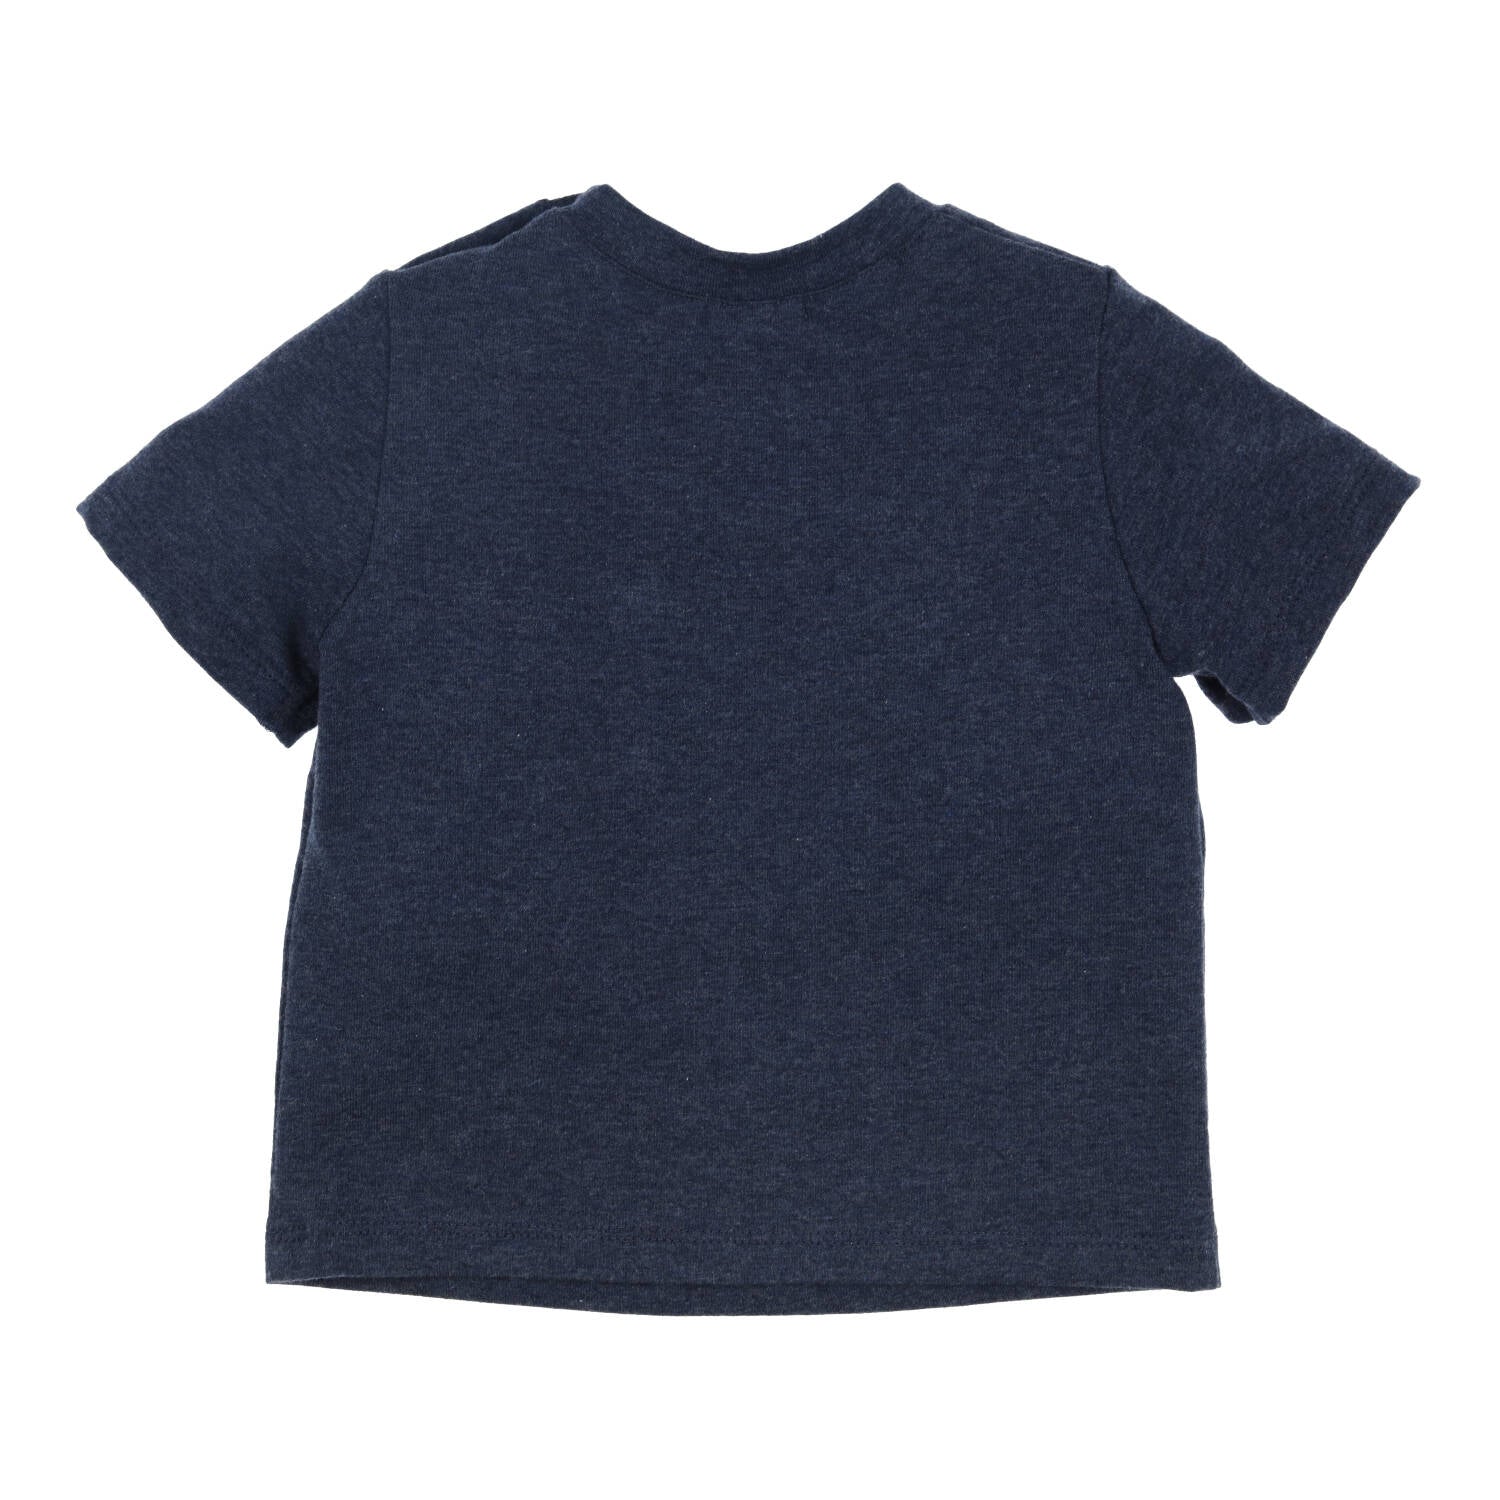 Jongens T-shirt Aerochine van Gymp in de kleur Blue in maat 86.